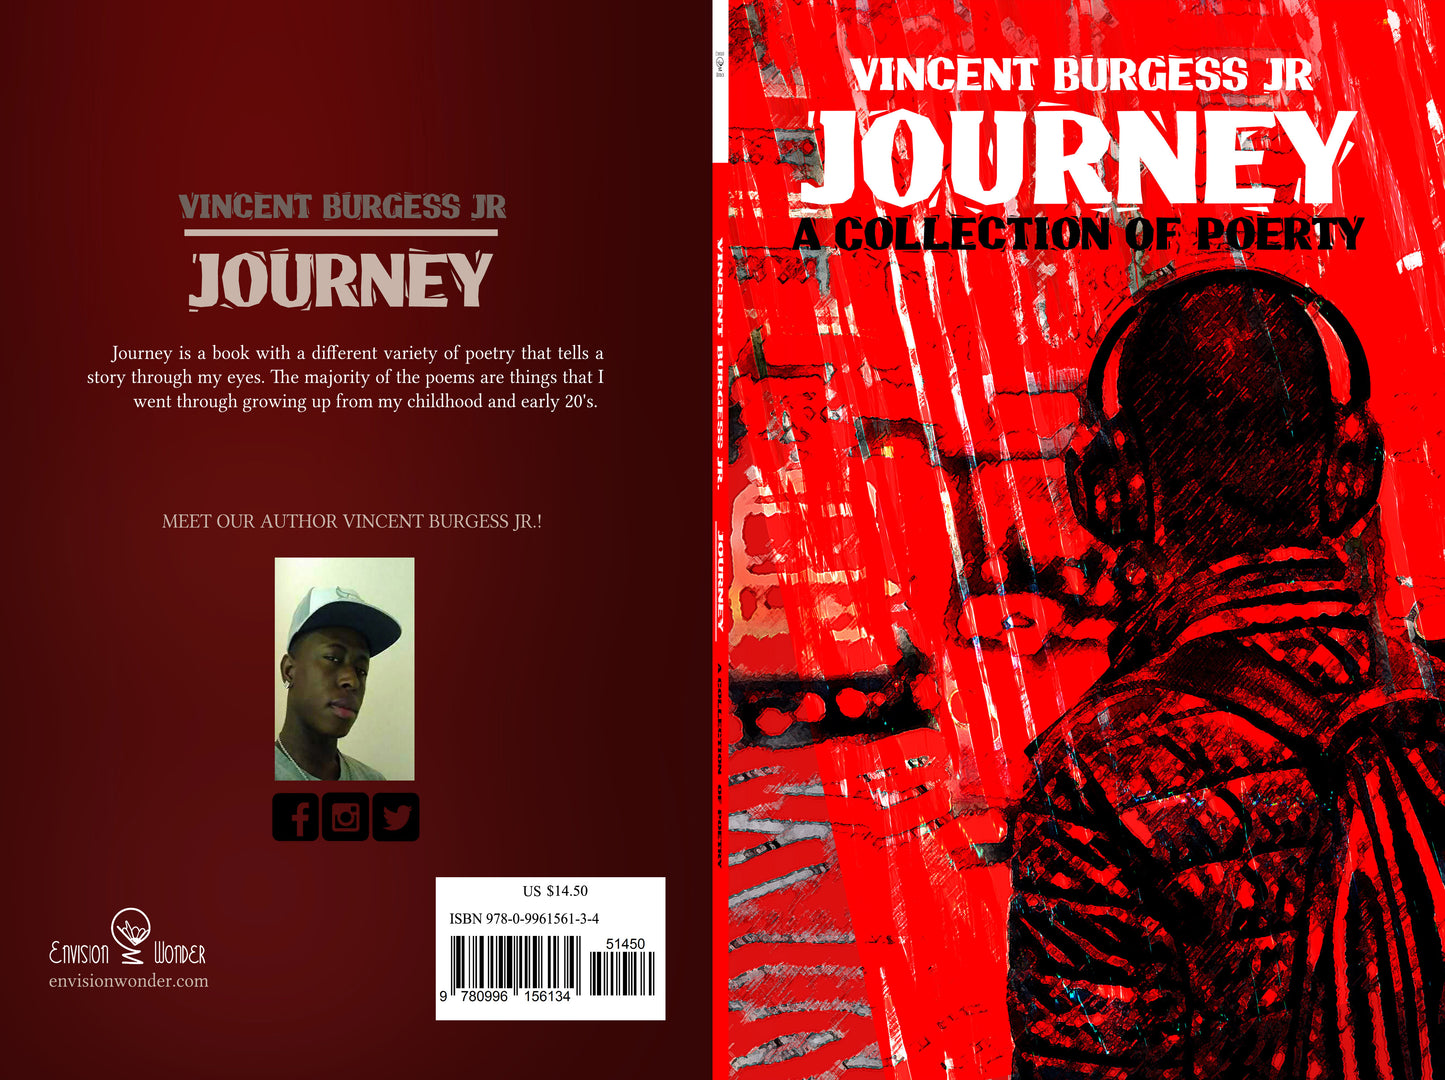 Journey by Vincent Burgess Jr.